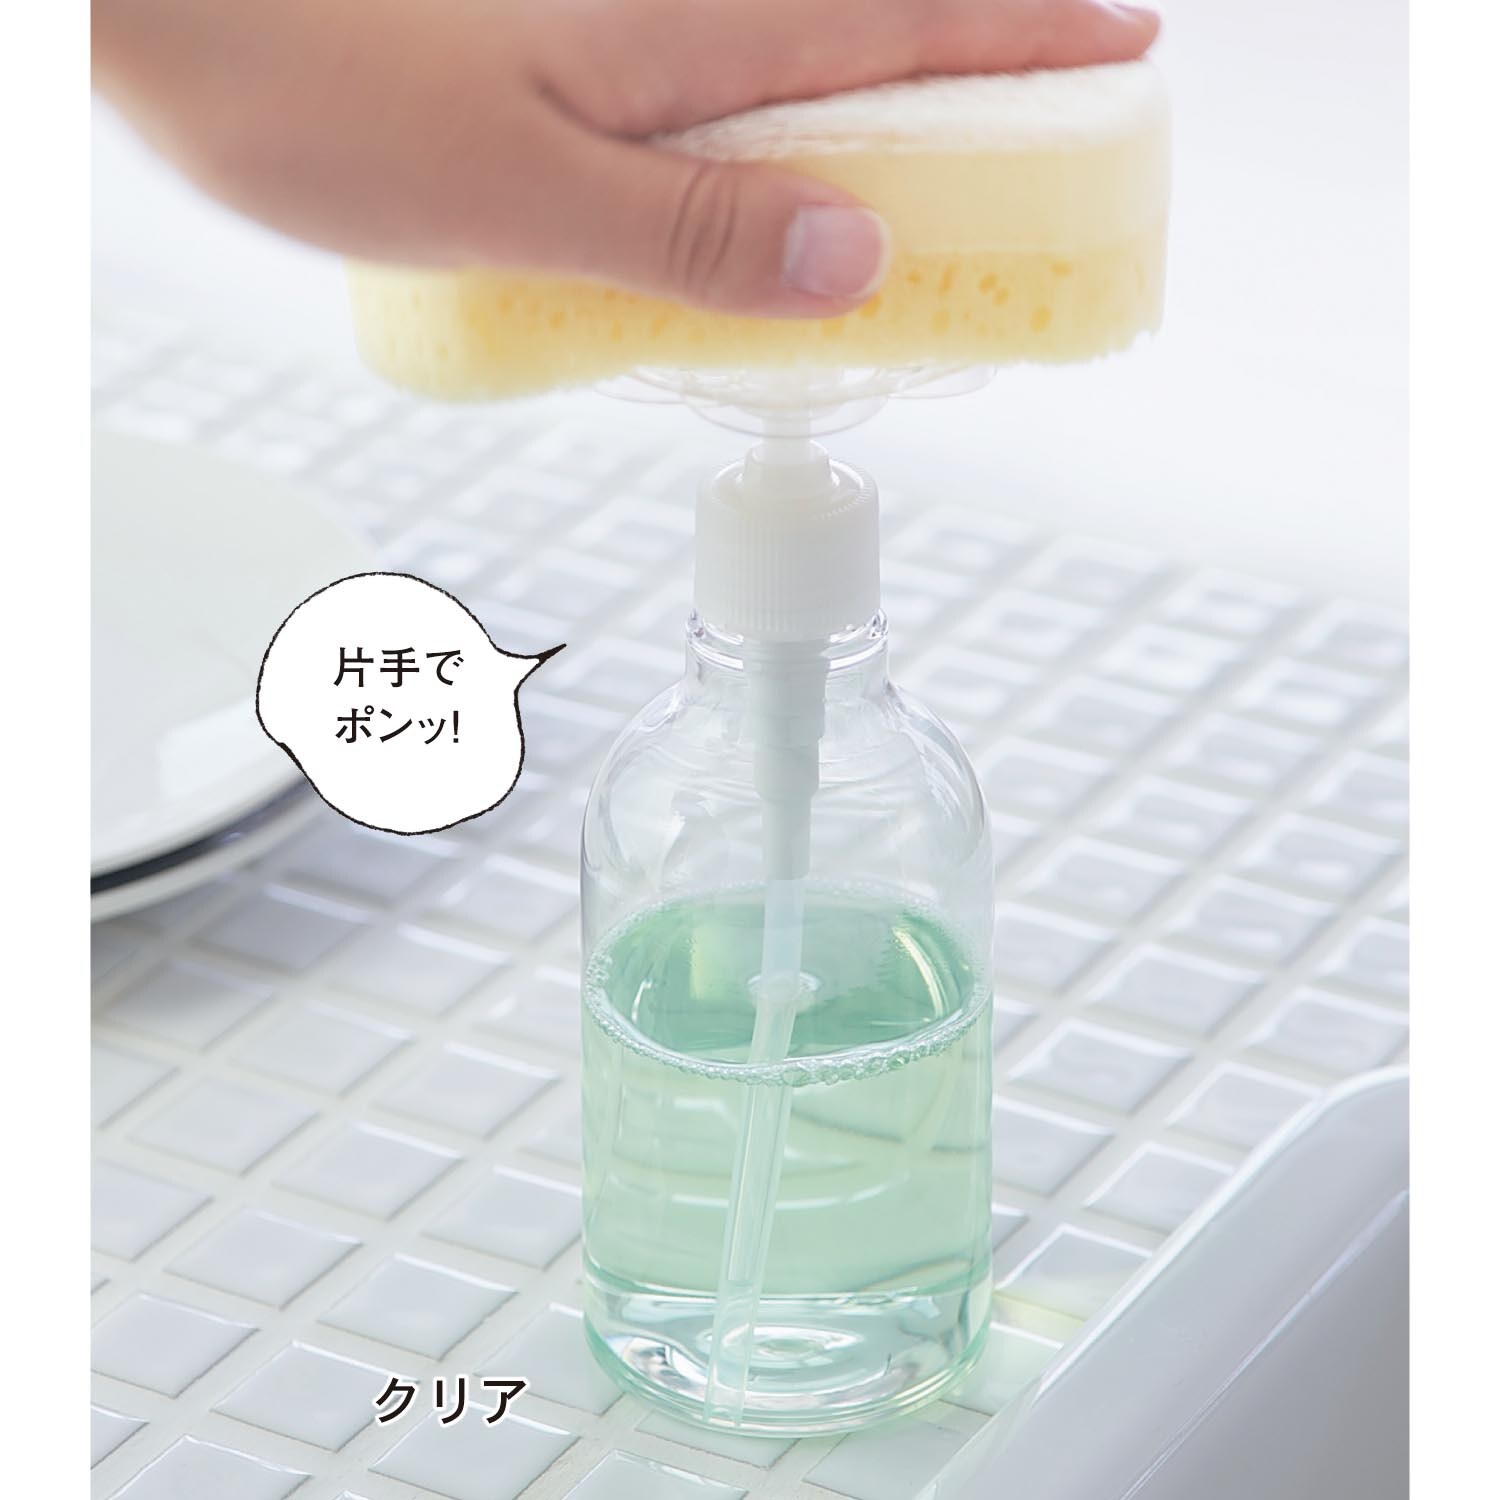 【ベルメゾン】便利な詰め替え食器用洗剤ボトル「エコポン」